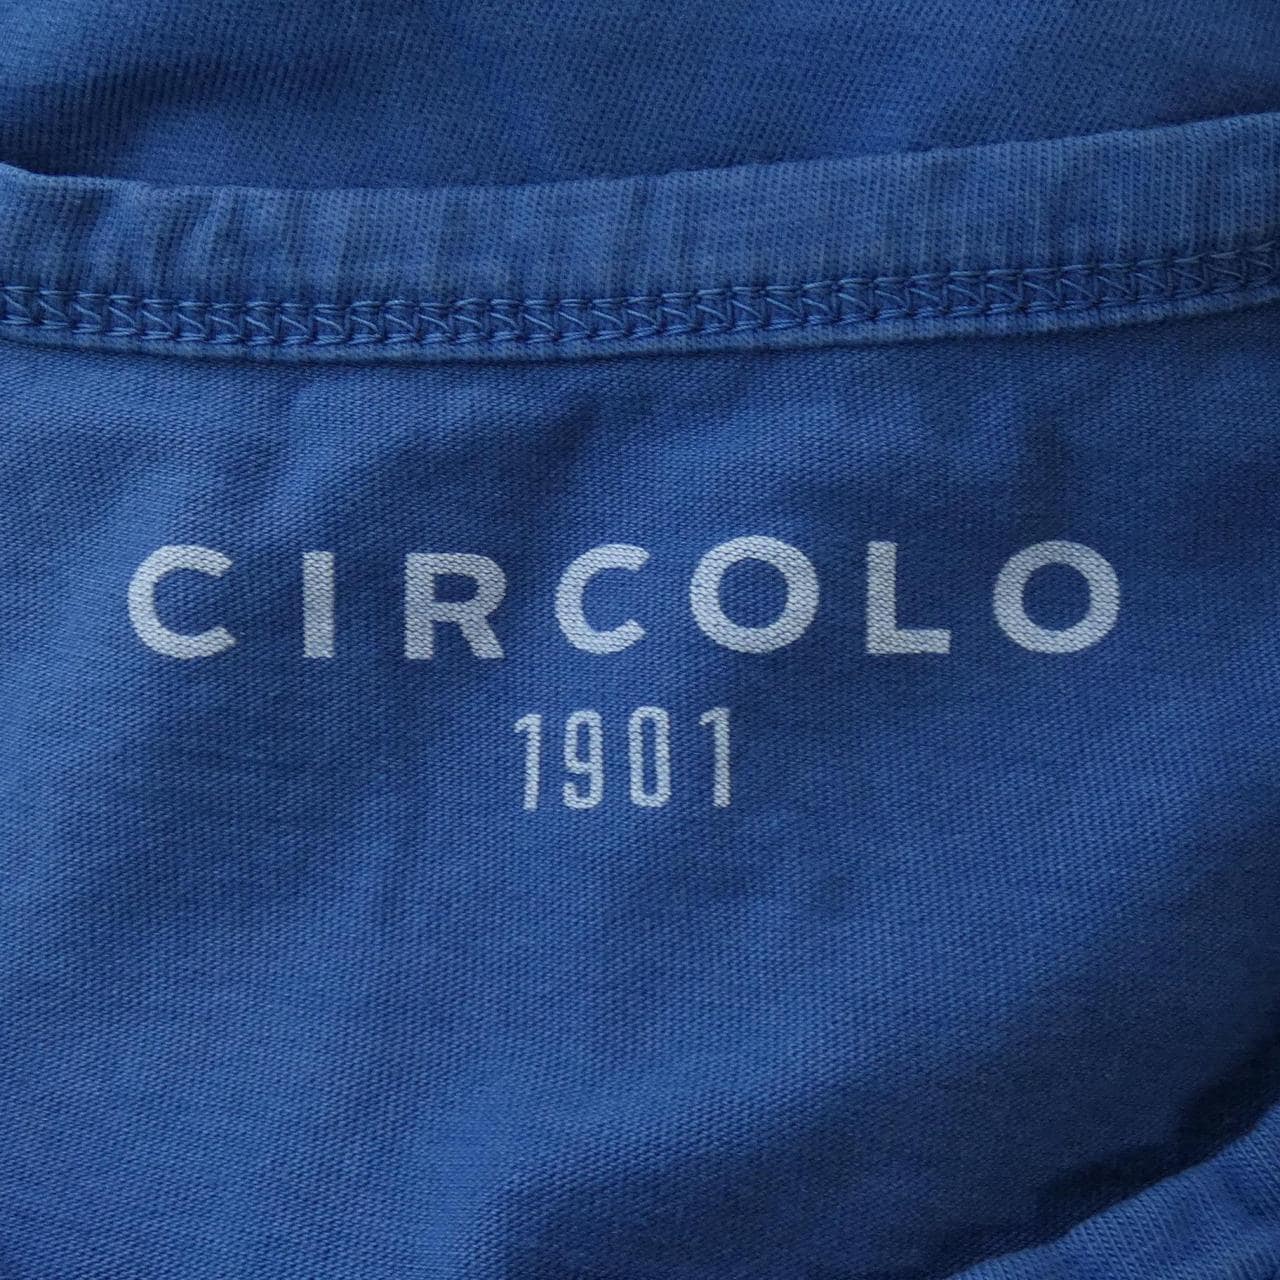 チルコロ 1901 CIRCOLO 1901 トップス